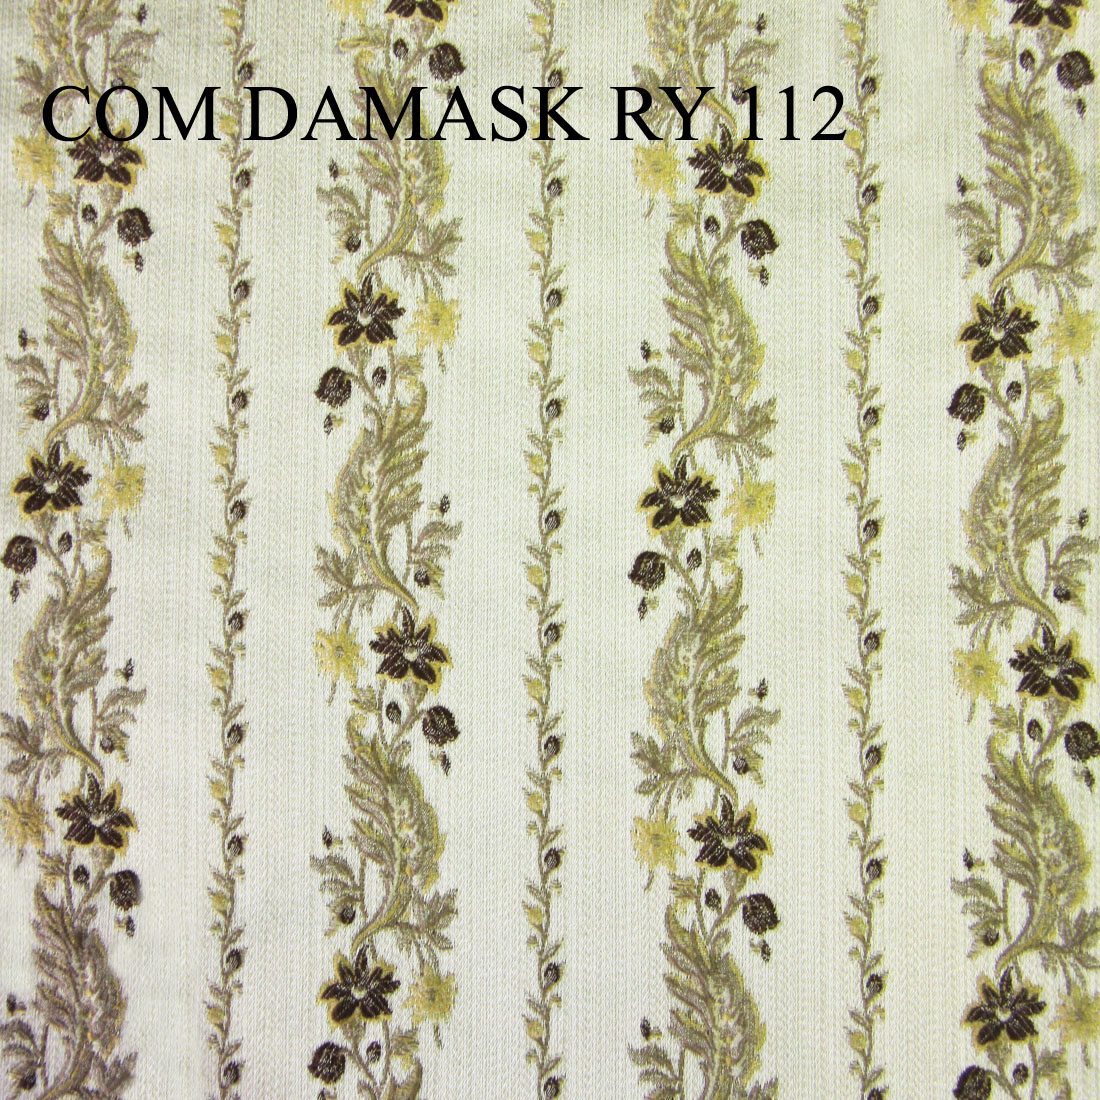 COM DAMASK RY 112